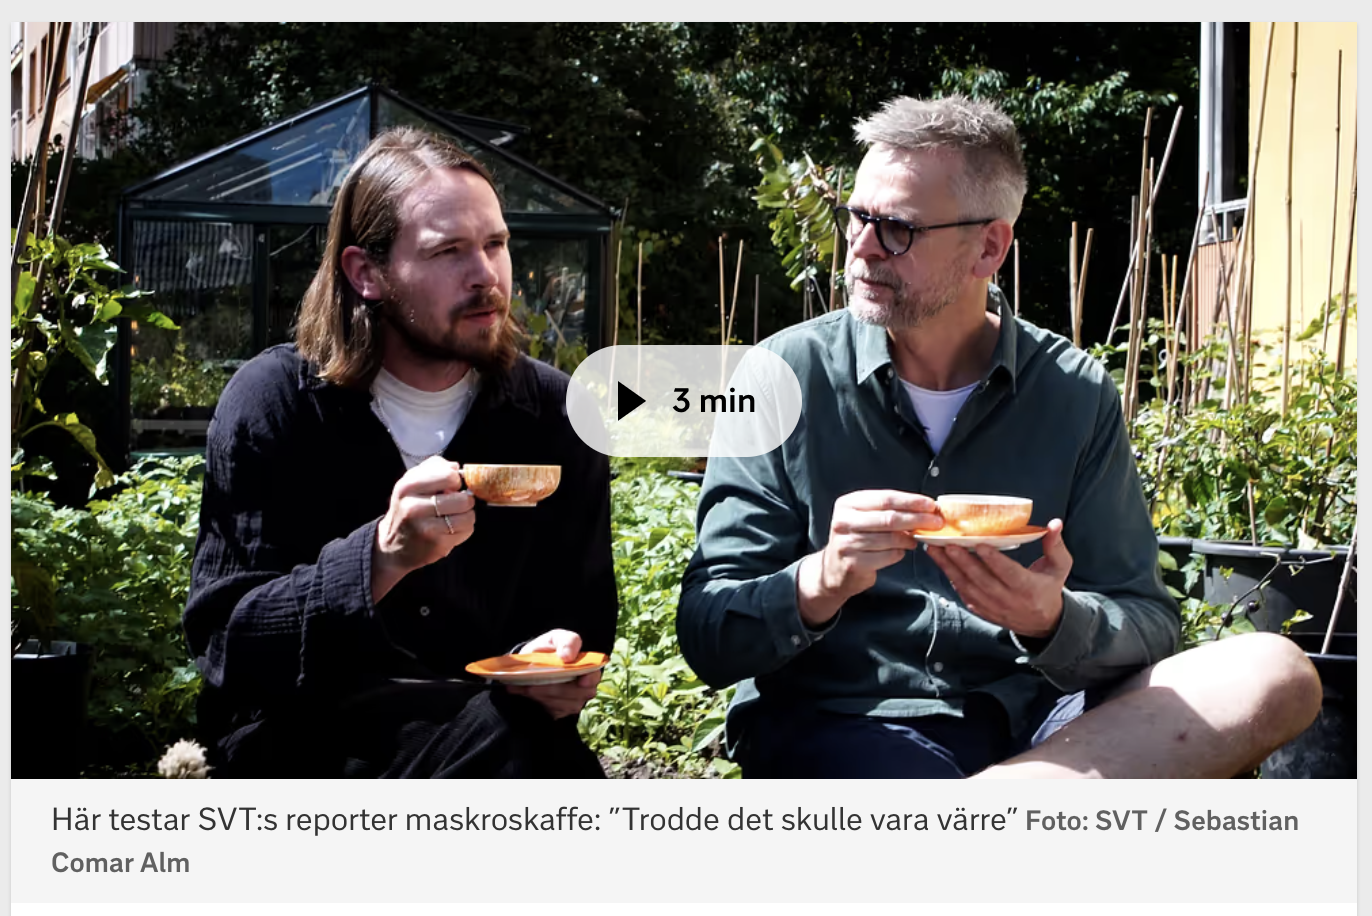 Farbror Gröns maskroskaffe på SVT Nyheter